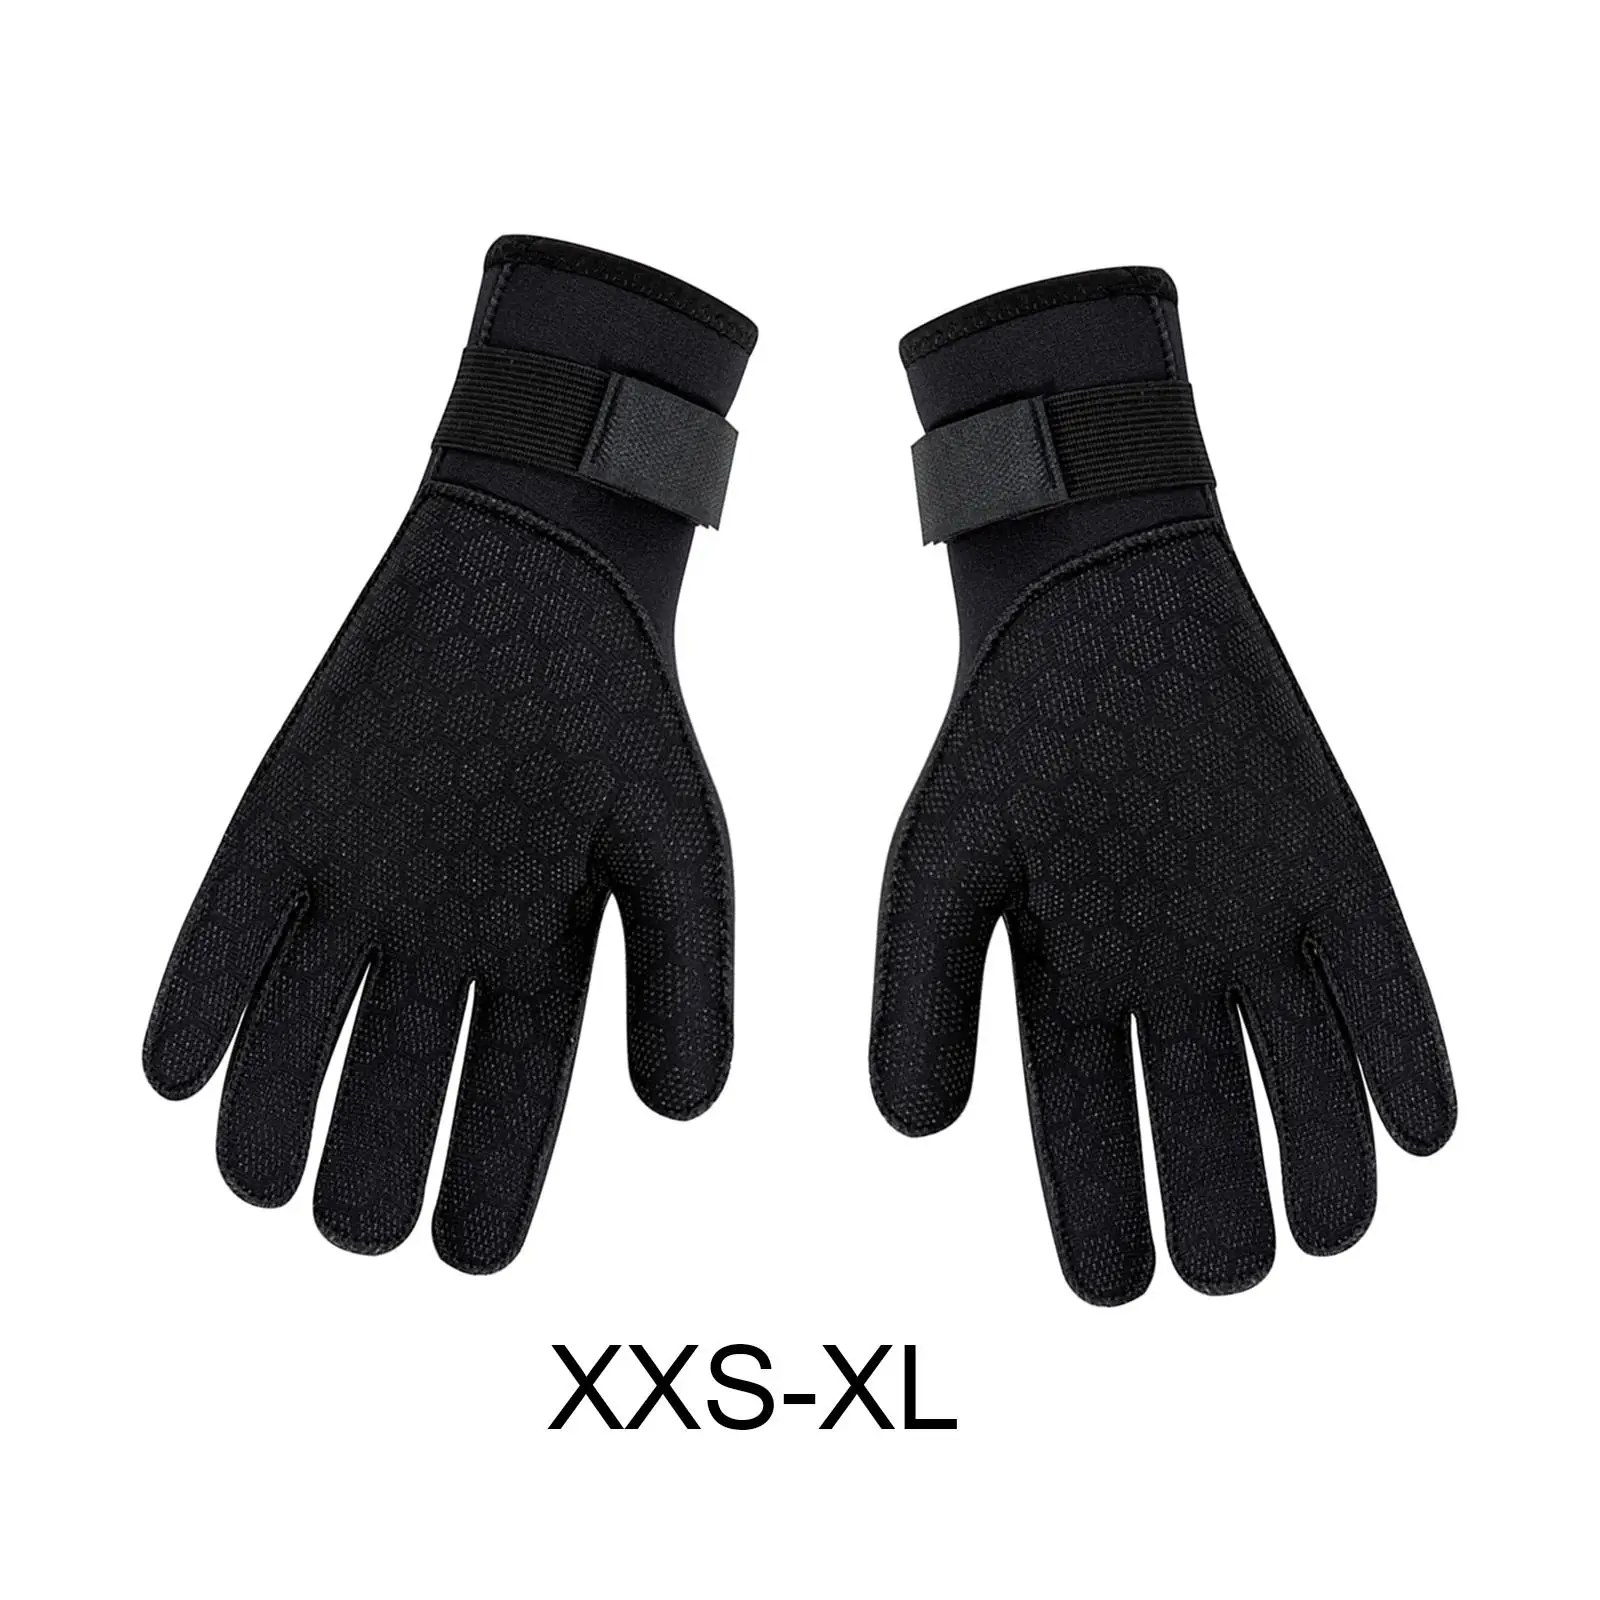 Wetsuit Gloves Thermal 3mm Neoprene Gloves for Men Women Skiing Spearfishing